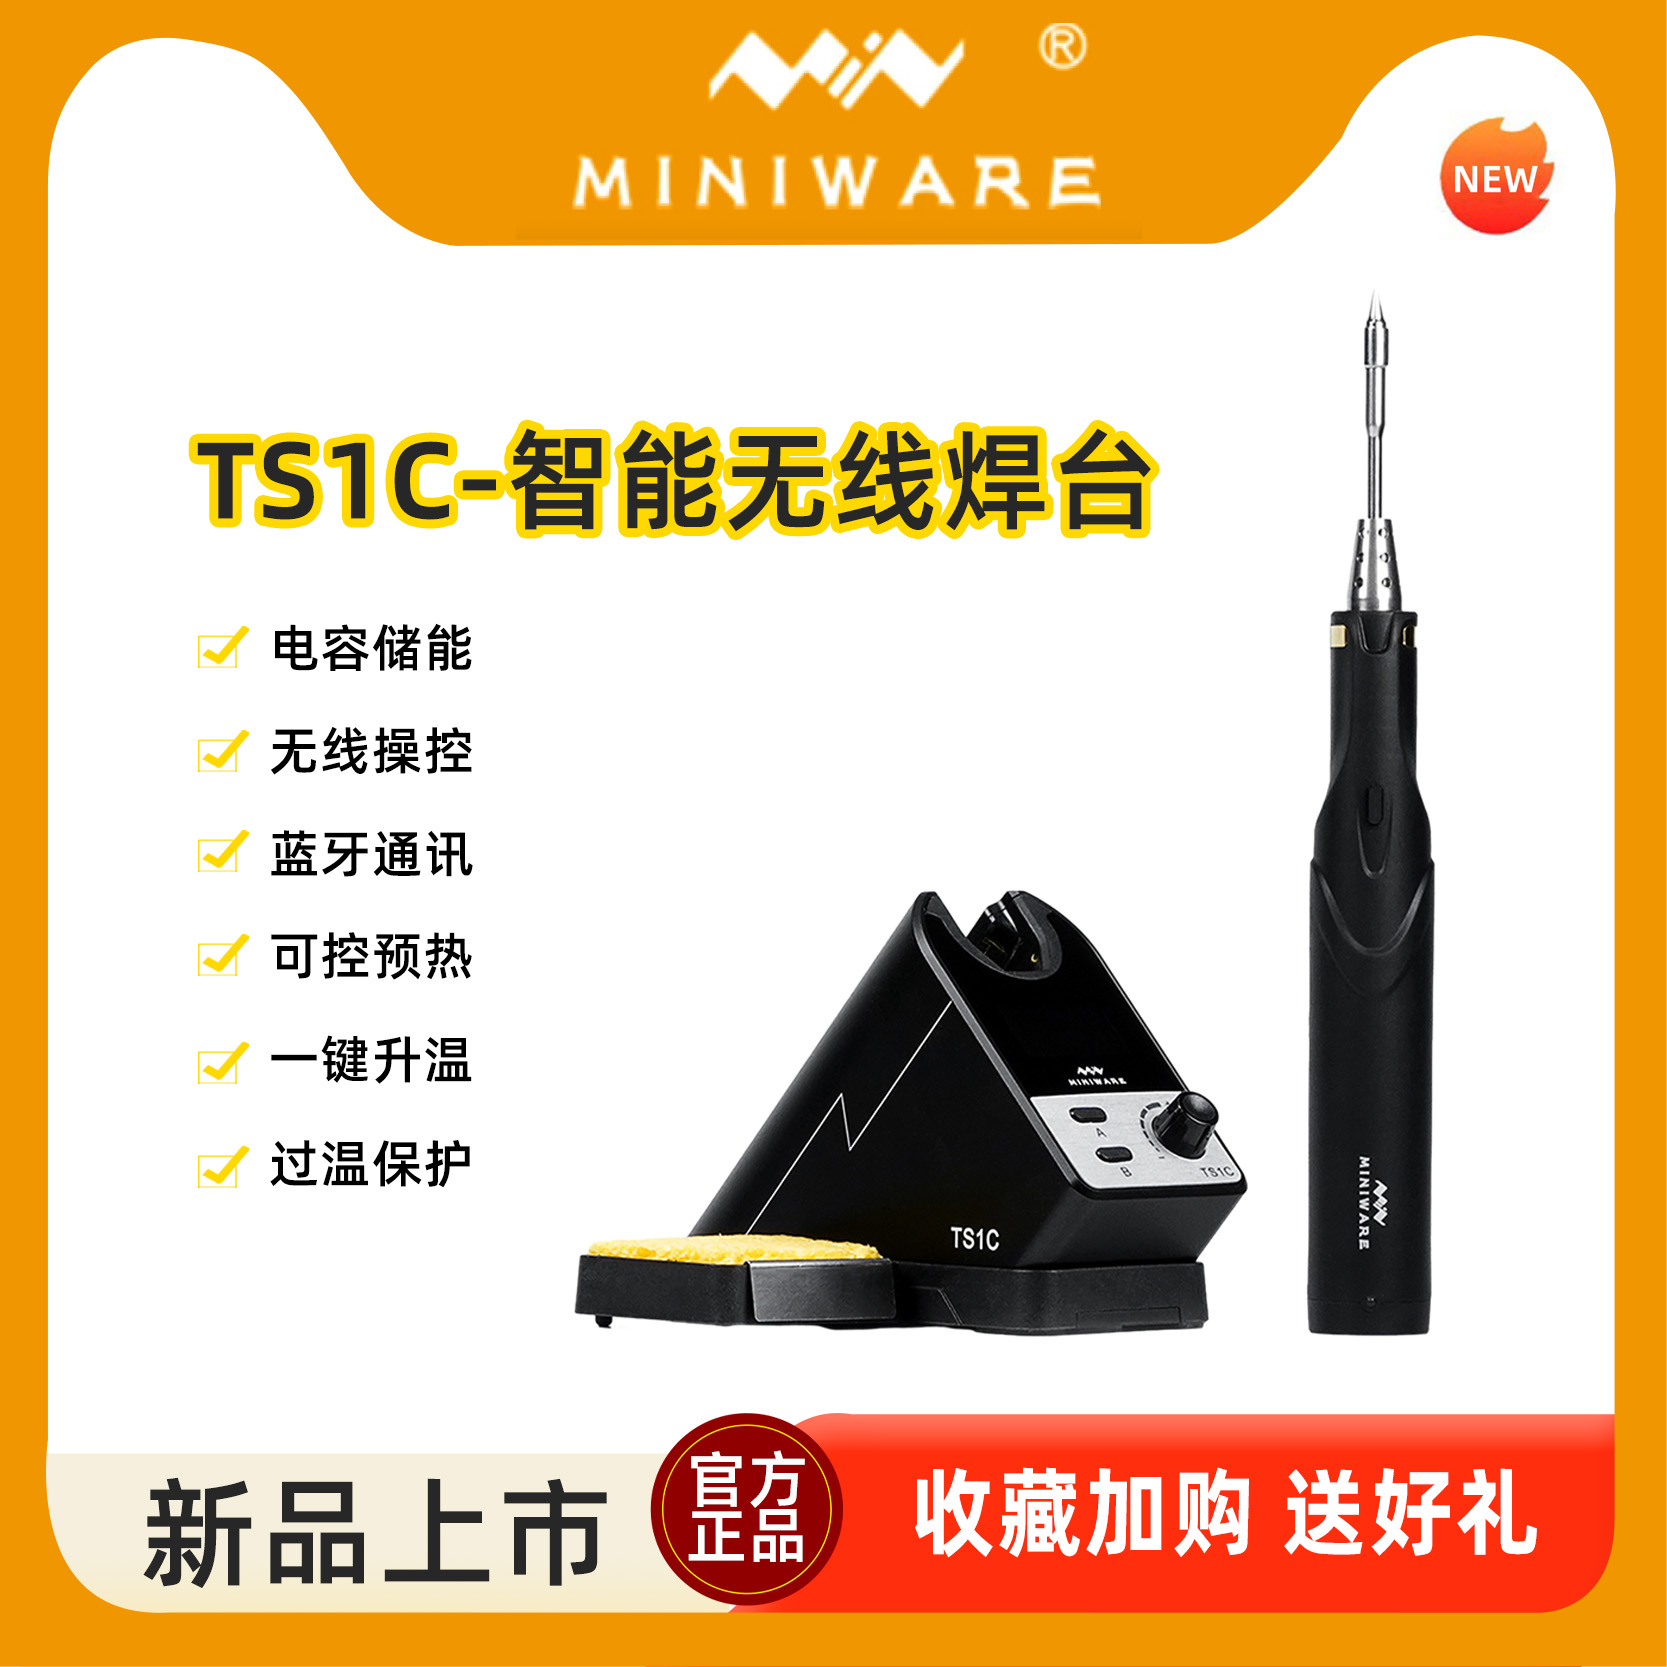 MINIWARE无线电烙铁套装焊台TS1C新型储能式智能台式焊接工具